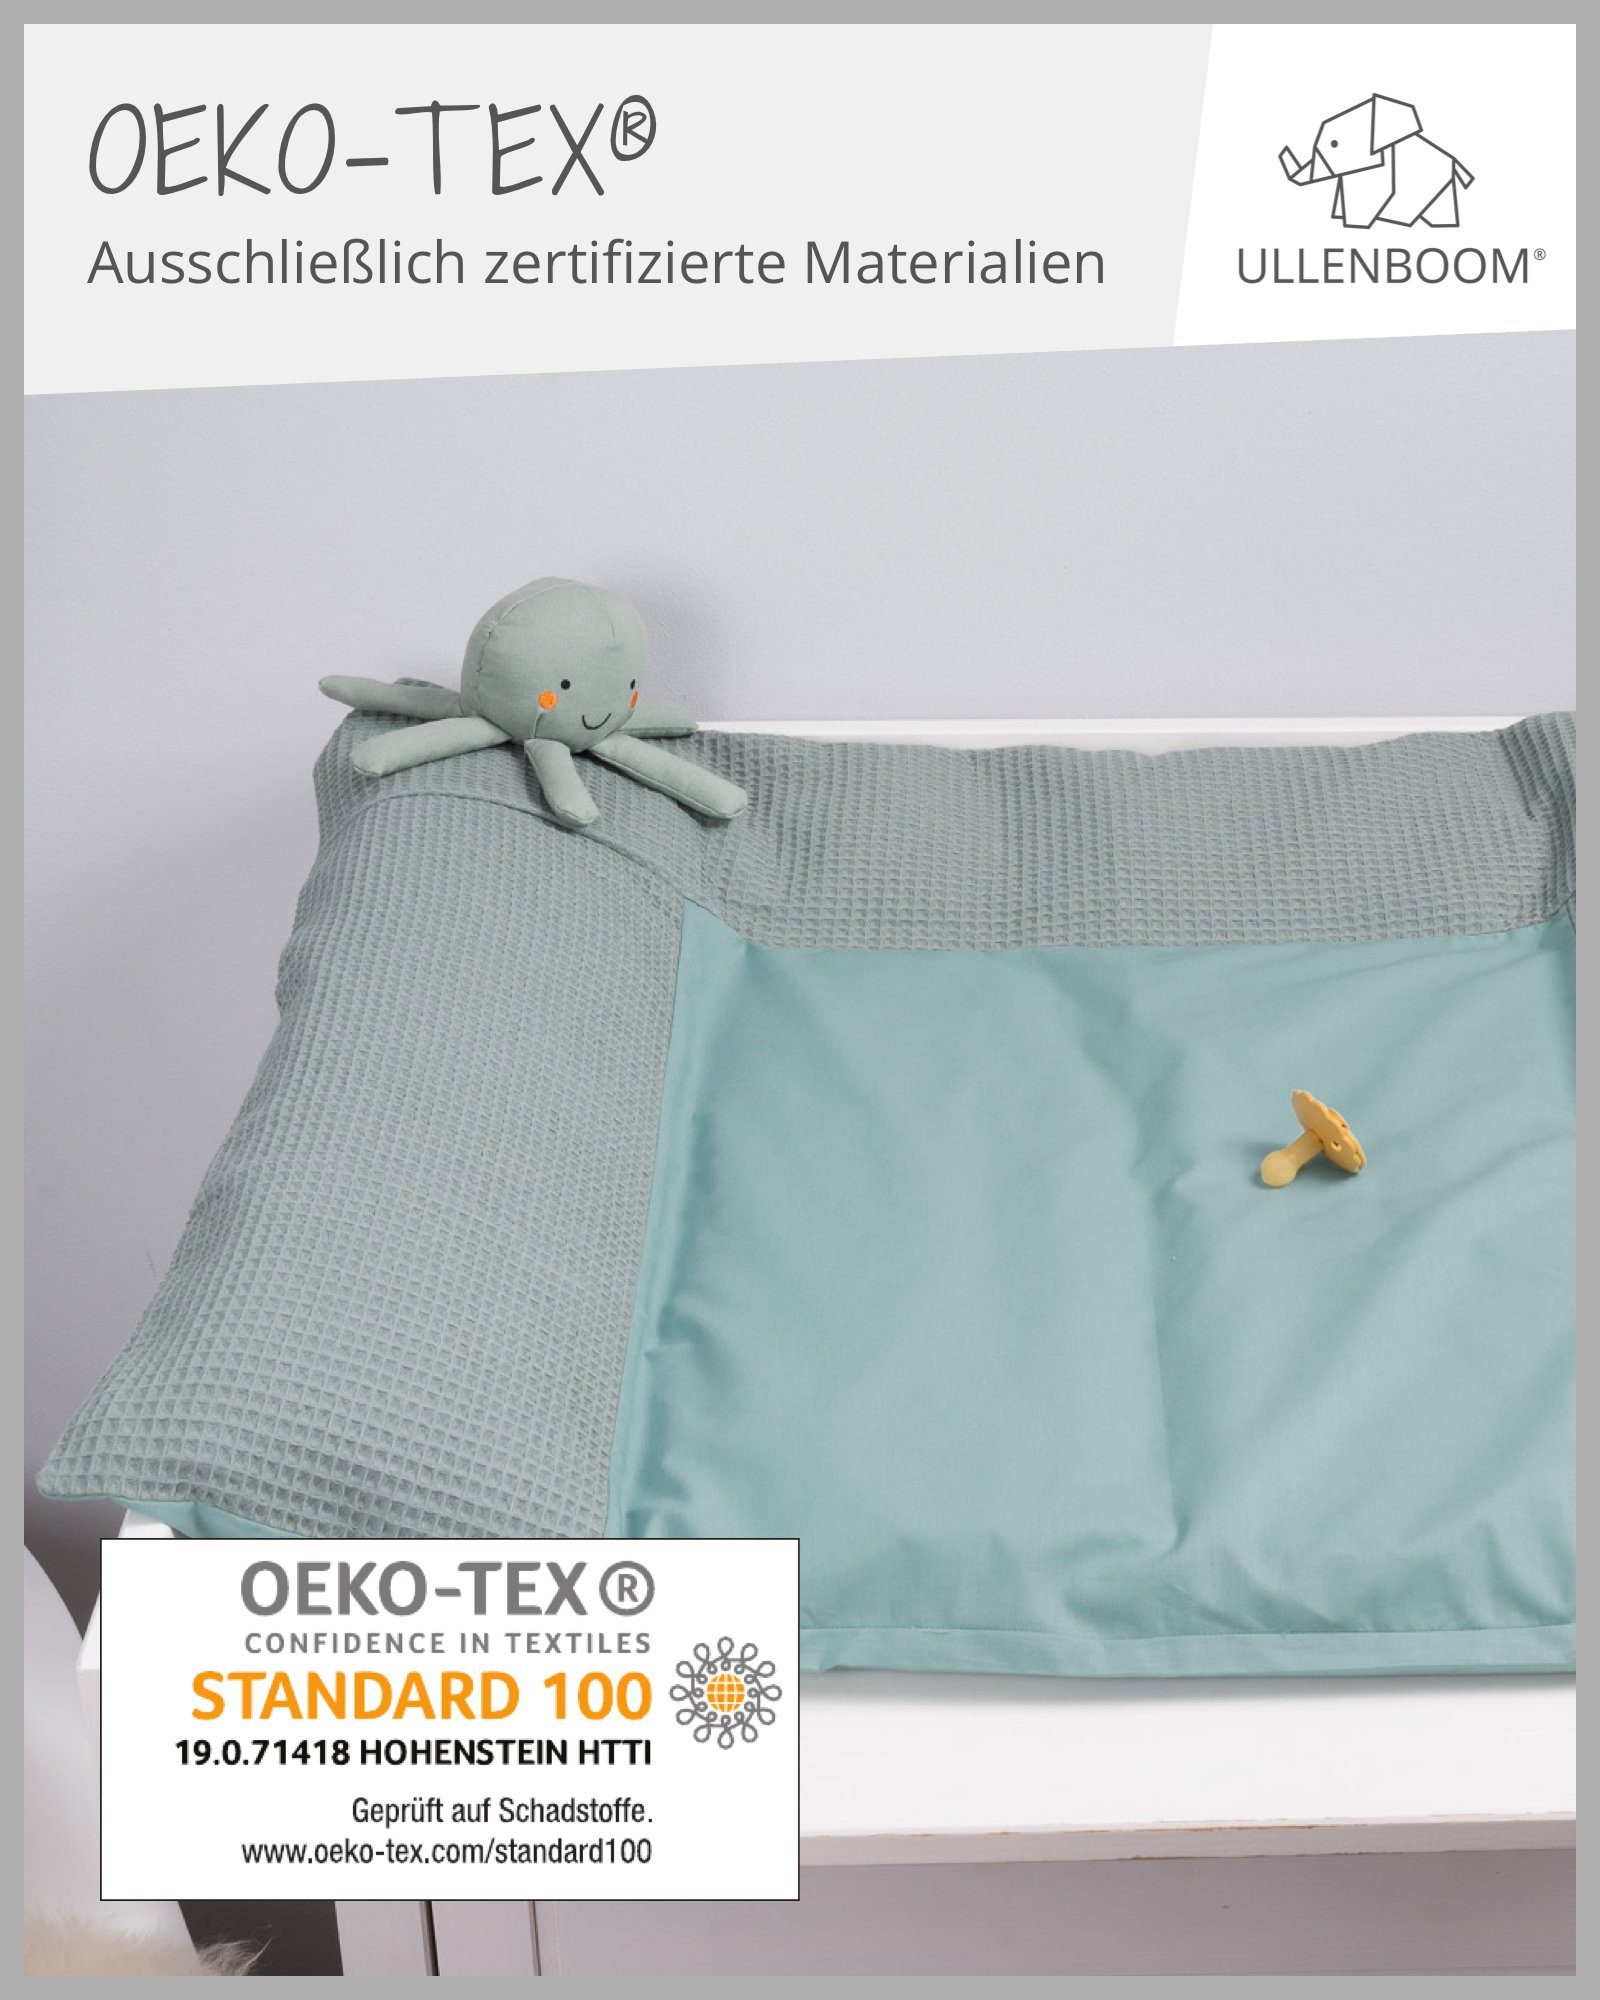 ULLENBOOM ® Wickelauflagenbezug Baumwolle 75x85 mit cm, 100% in EU), Bezug (Made Salbeigrün, Wickelauflagenbezug Hotelverschluss